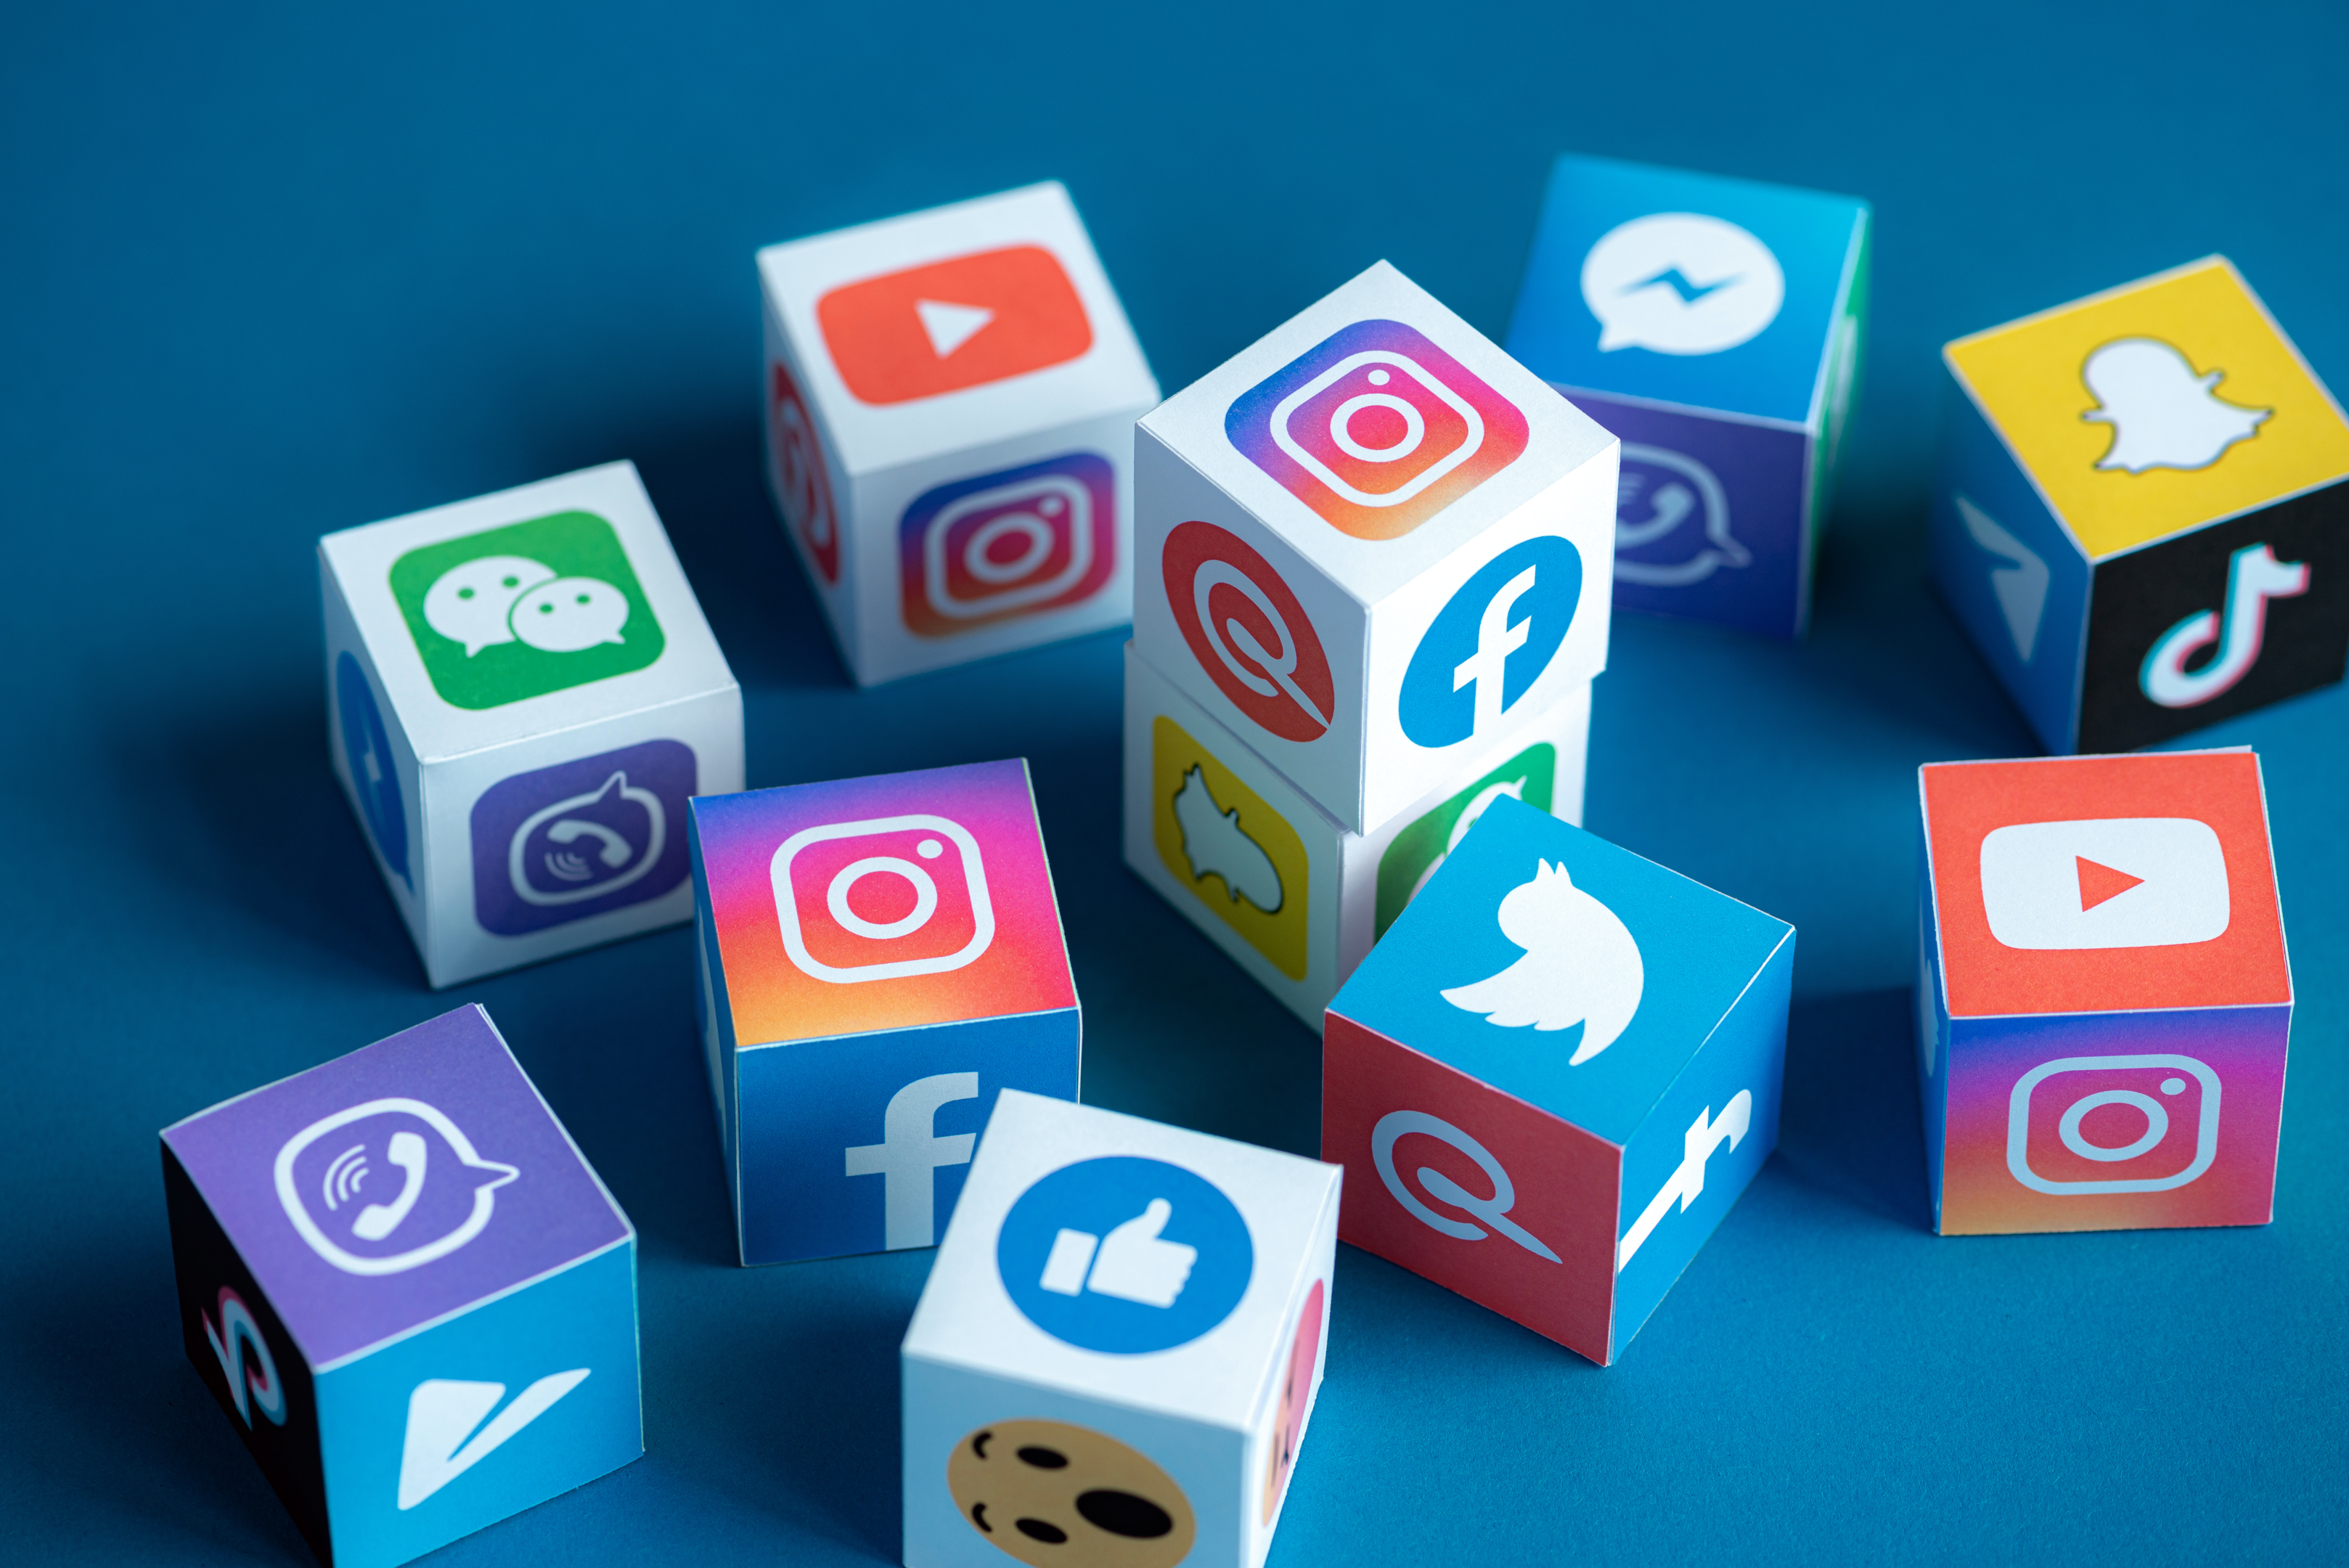 Social media logos on blocks